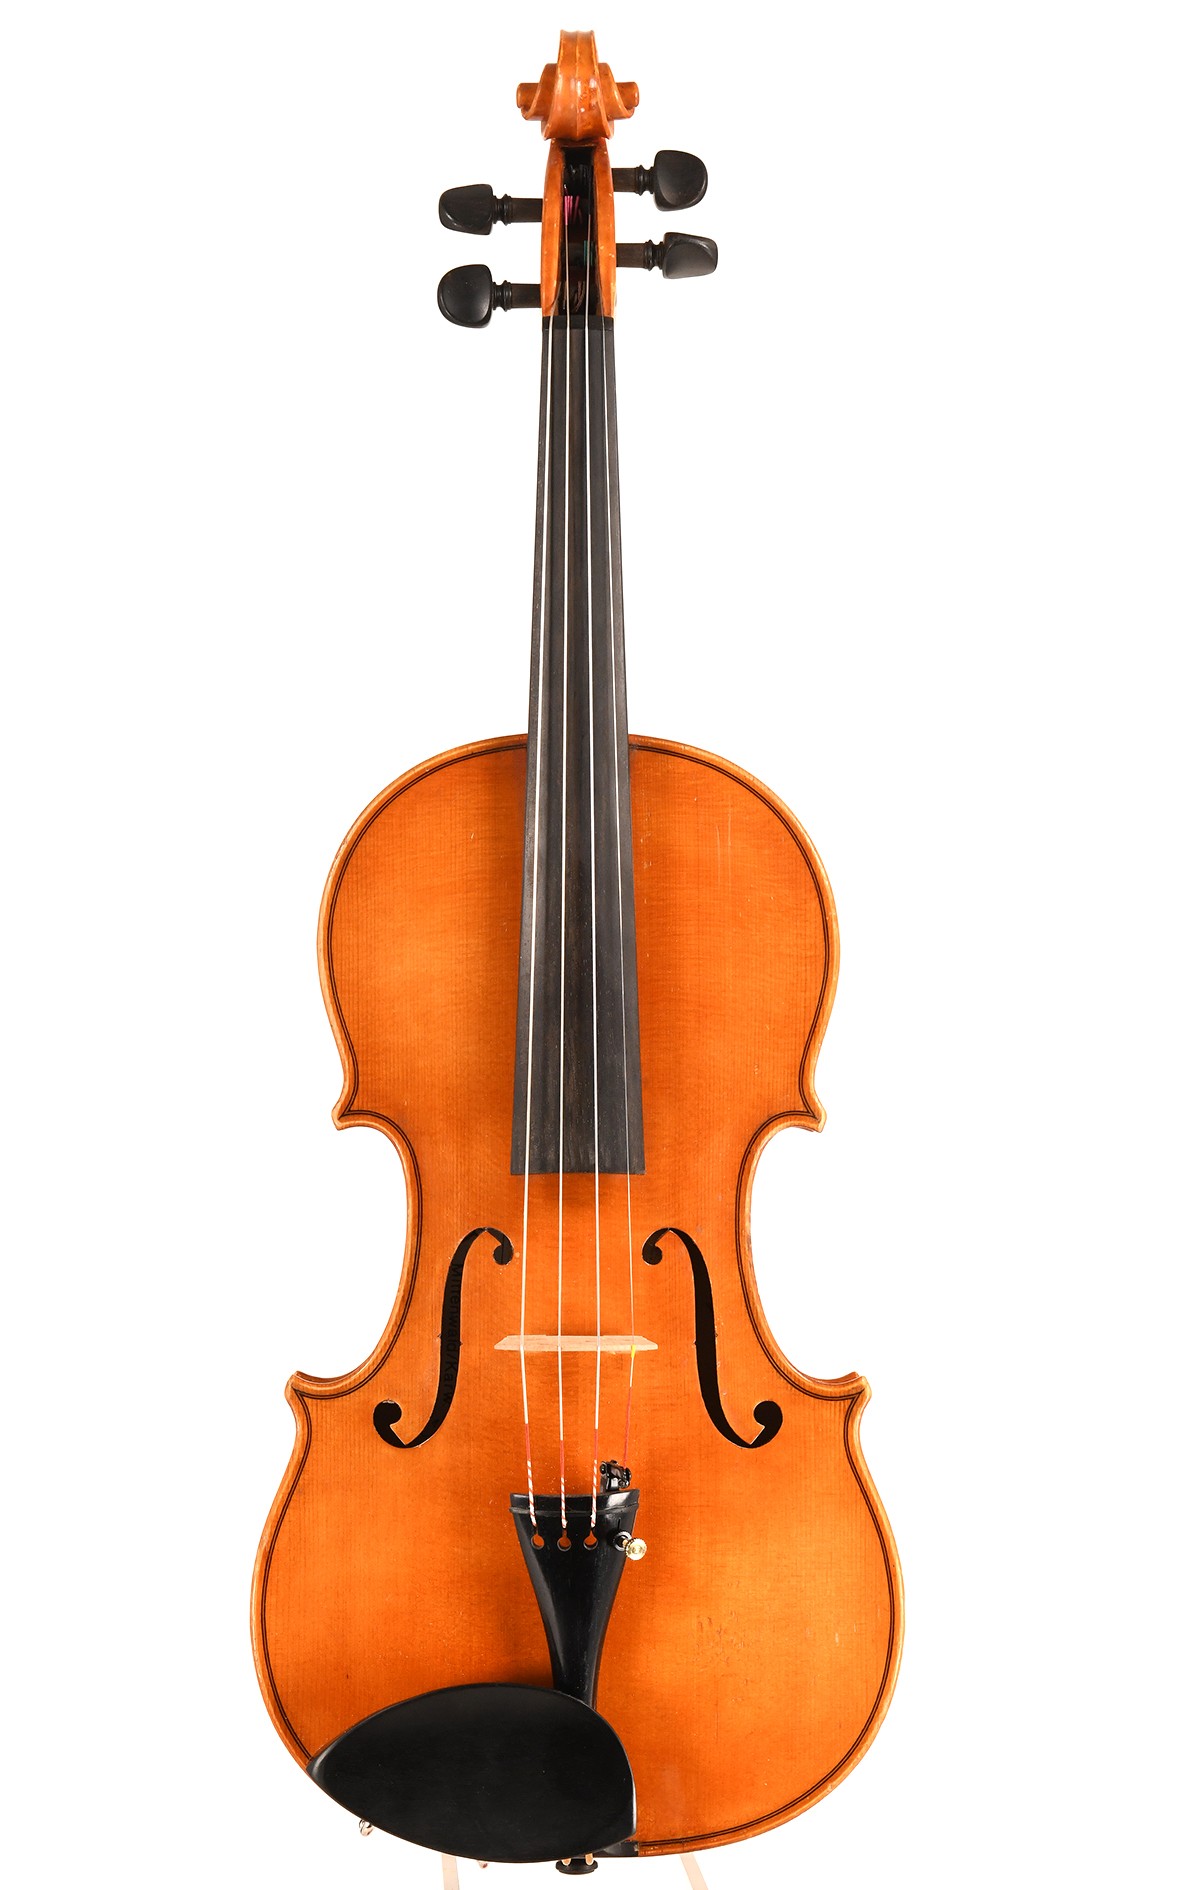 H. 卡纳-米滕瓦尔德，1970年的小提琴大师